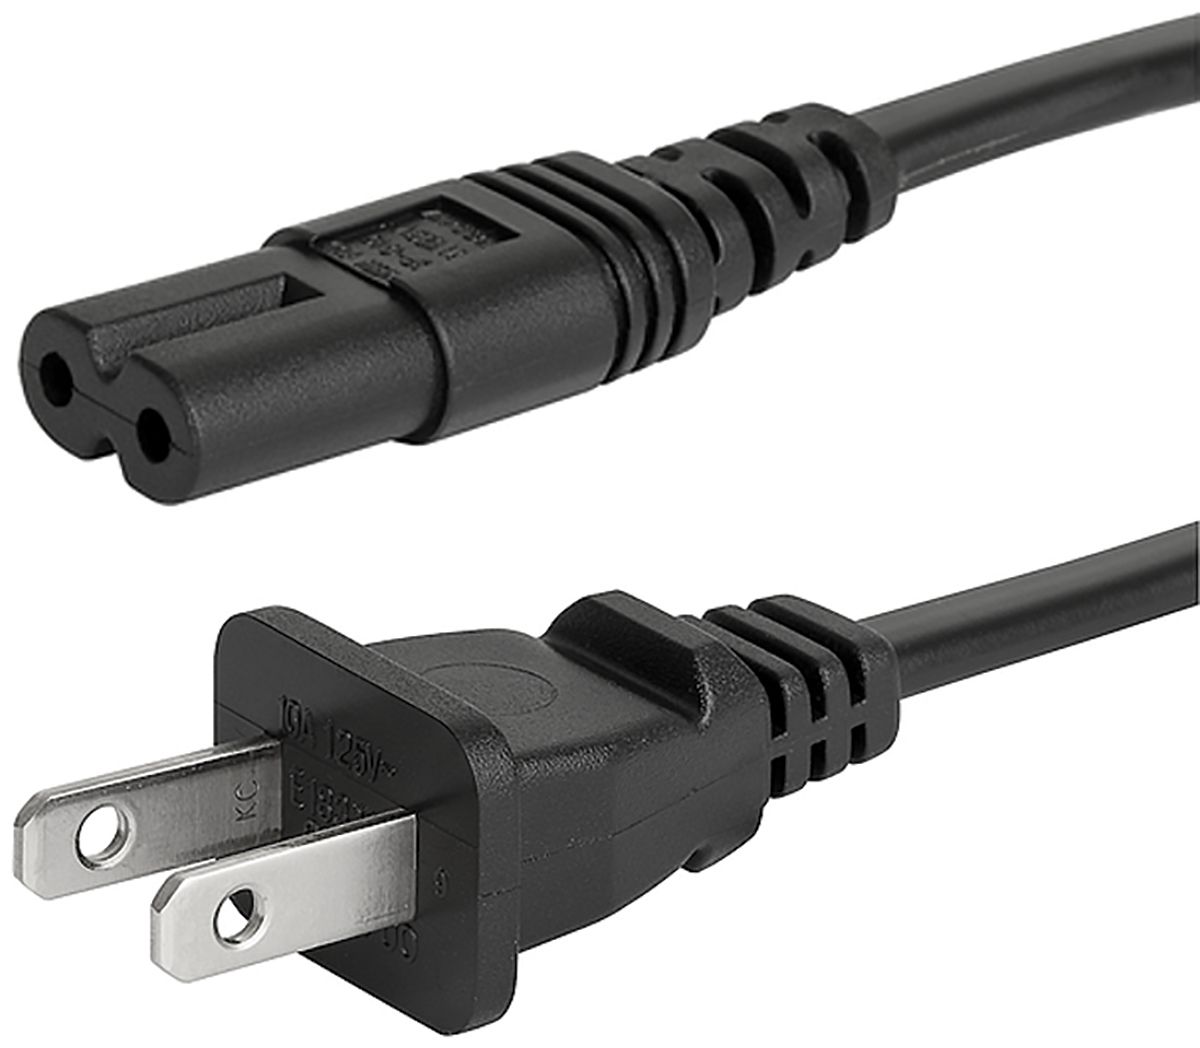 Cable de alimentación Schurter 6010 Negro de 2m, con. A IEC C7, hembra, con. B NEMA 1-15, macho, 125 V / 7 A